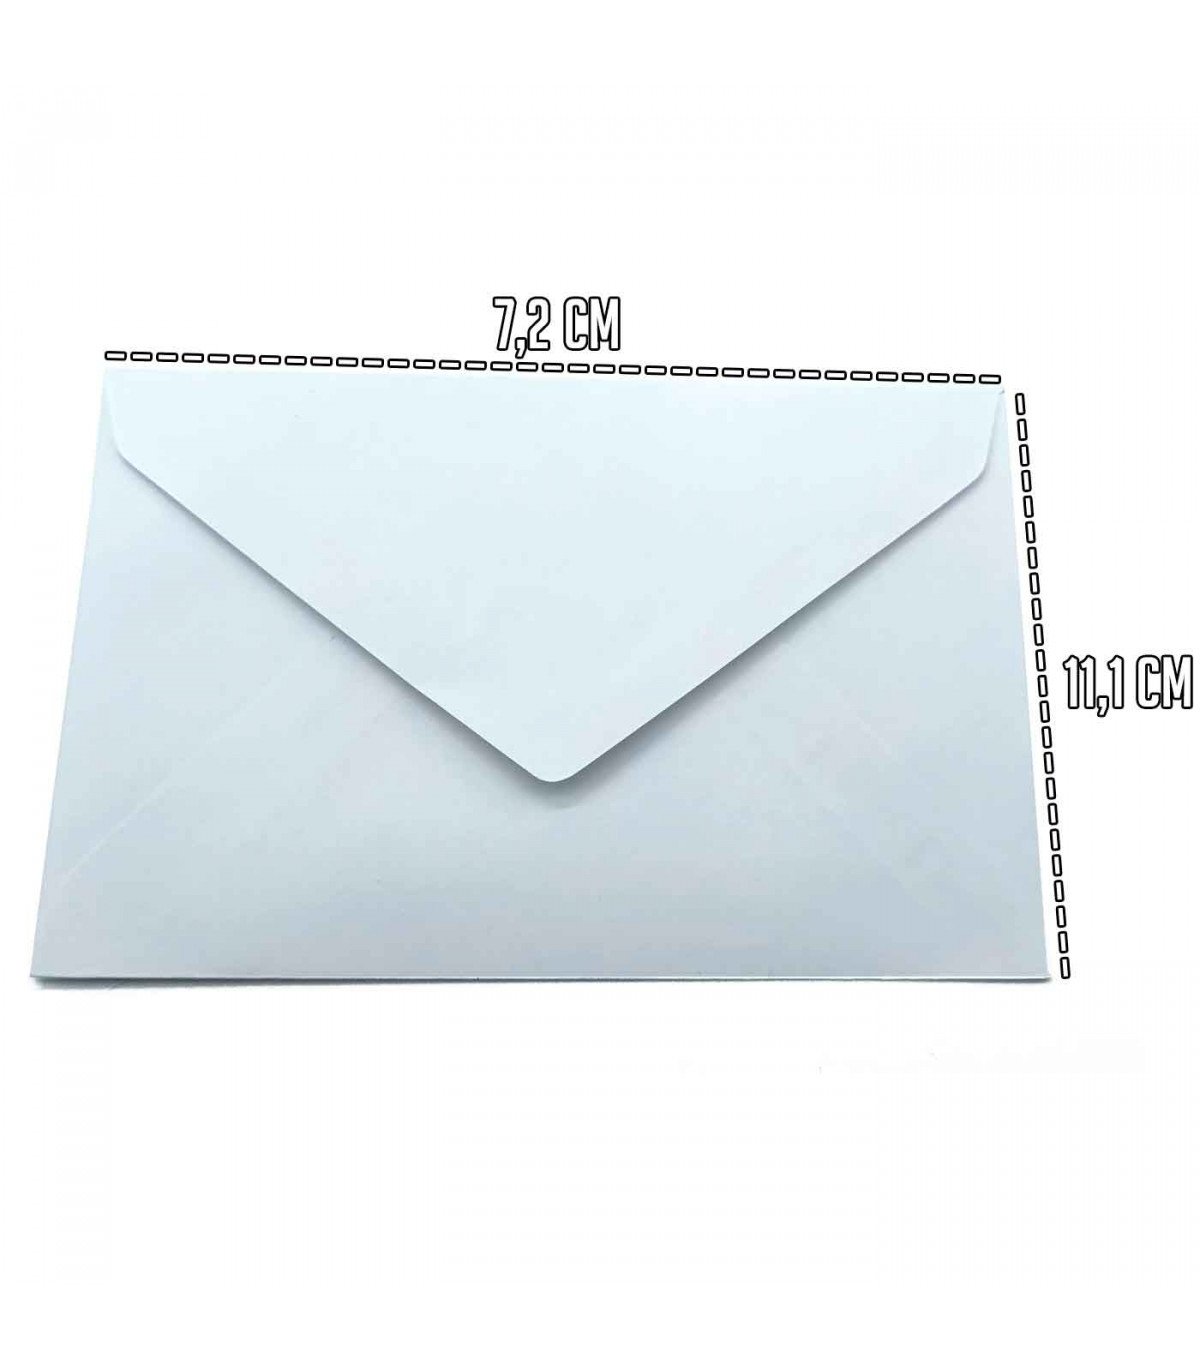 Pack de 80 sobres de color blanco especiales para tarjetas con medidas de  70 x 110 con. Medias de 70 x 110 con cierre de humedec